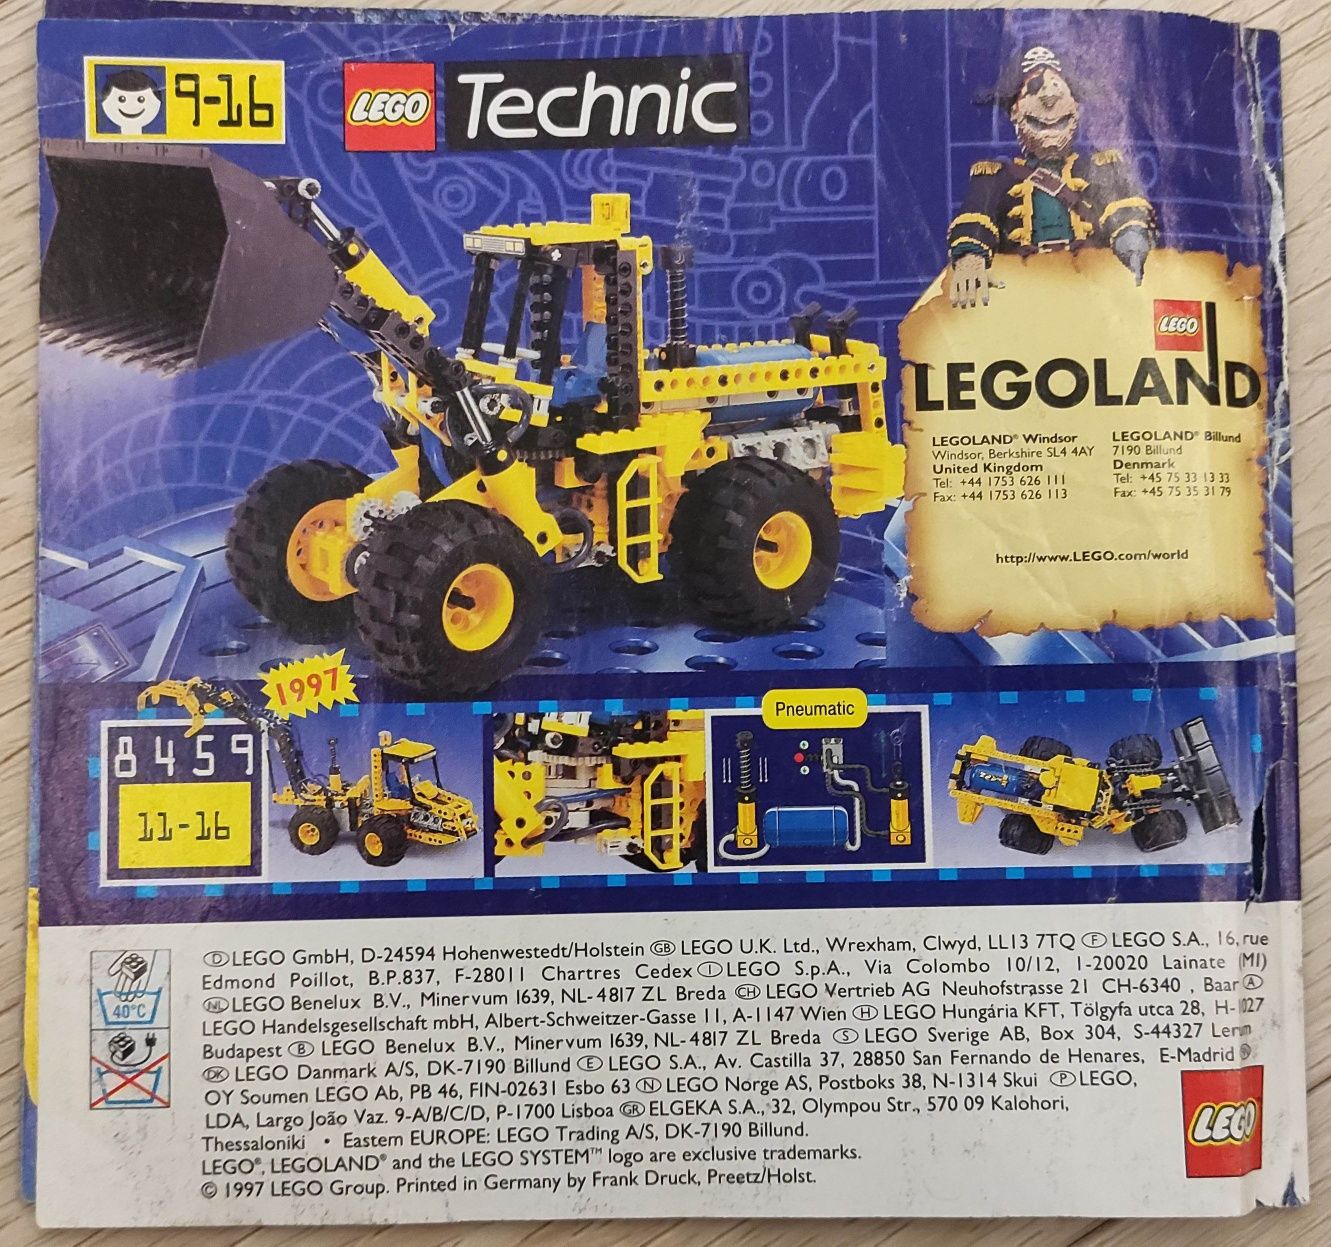 Katalog klocków LEGO z 1997 roku.